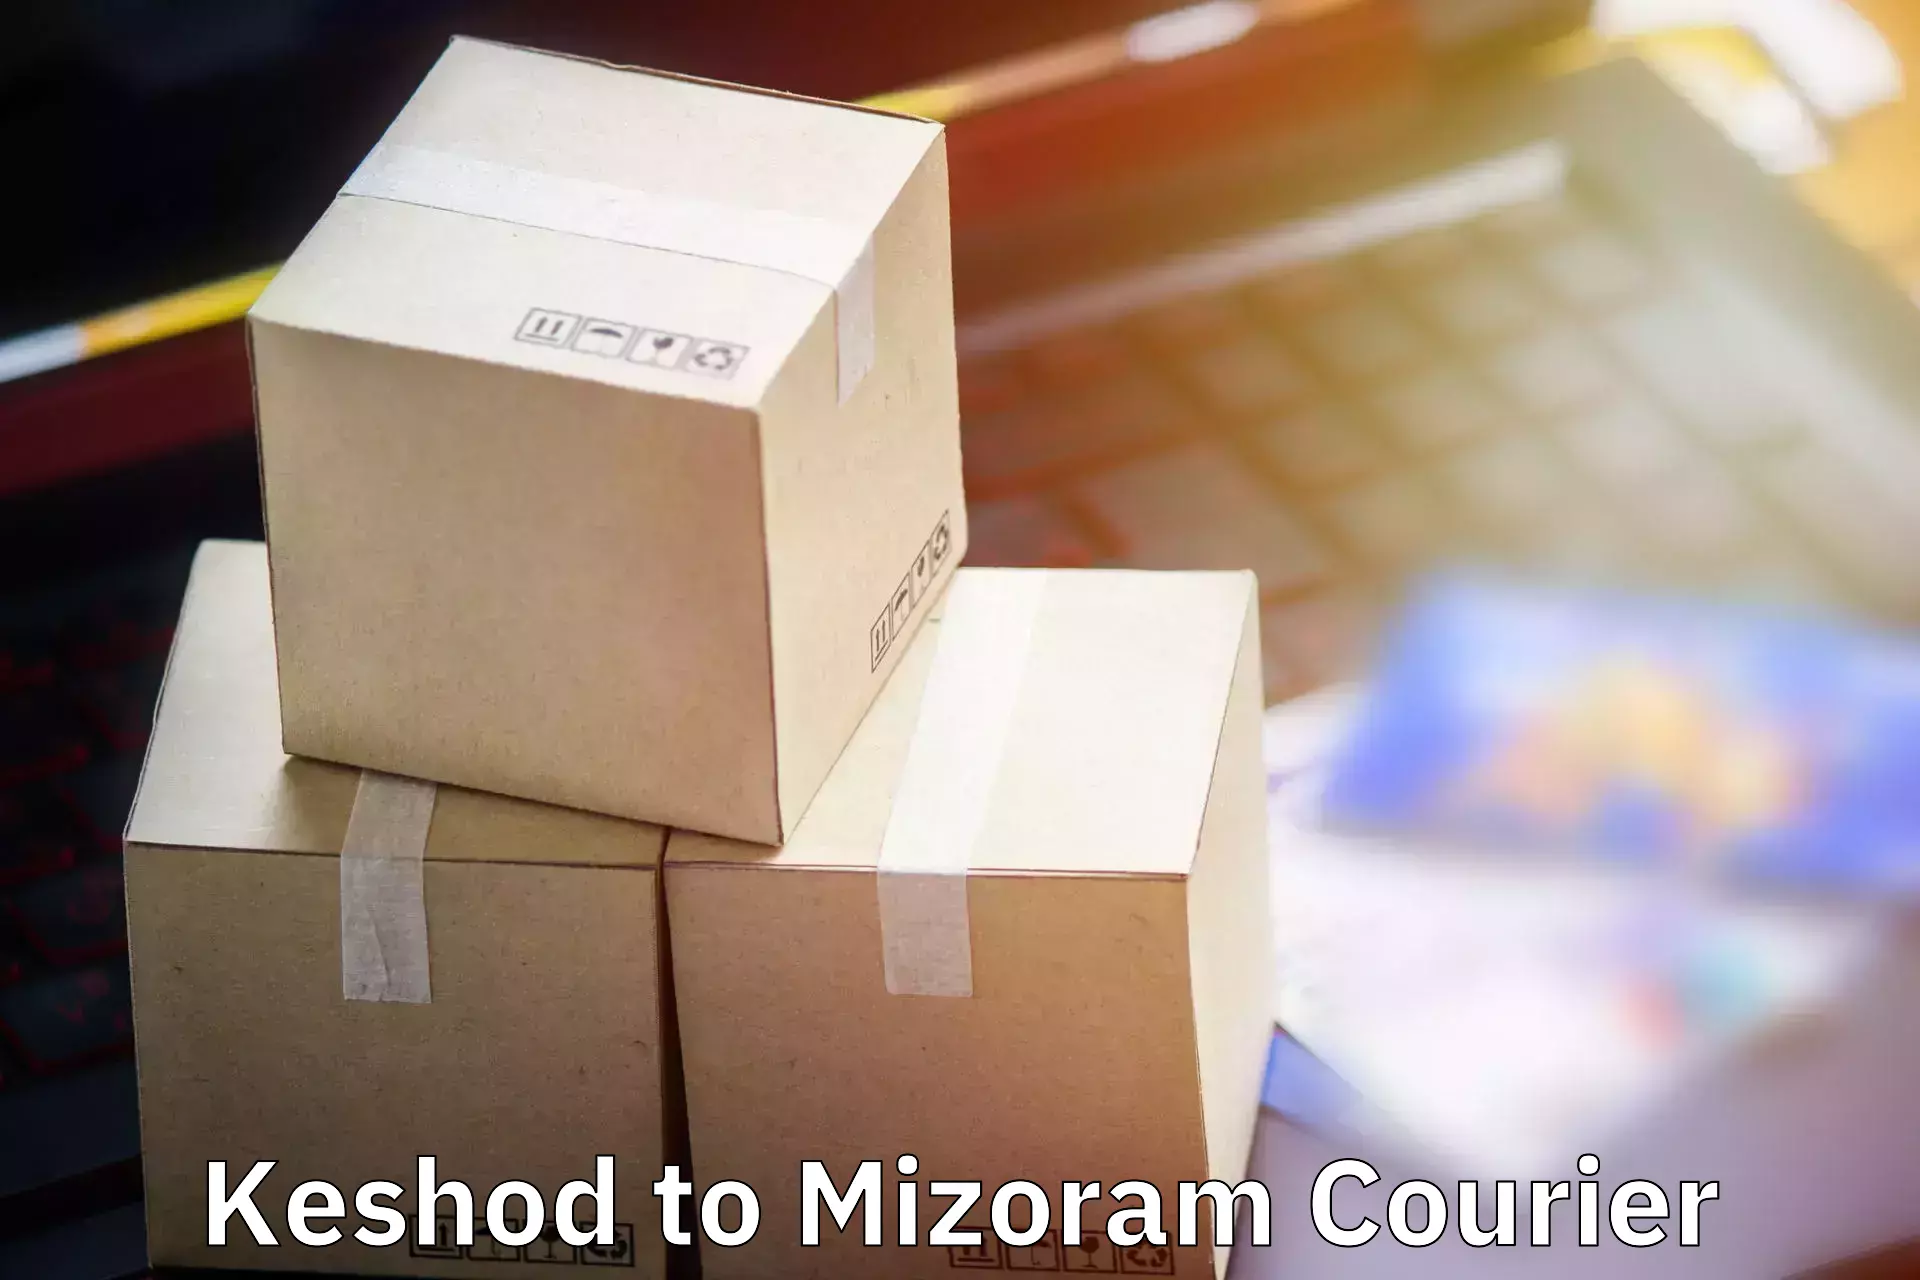 Baggage transport scheduler Keshod to Mizoram